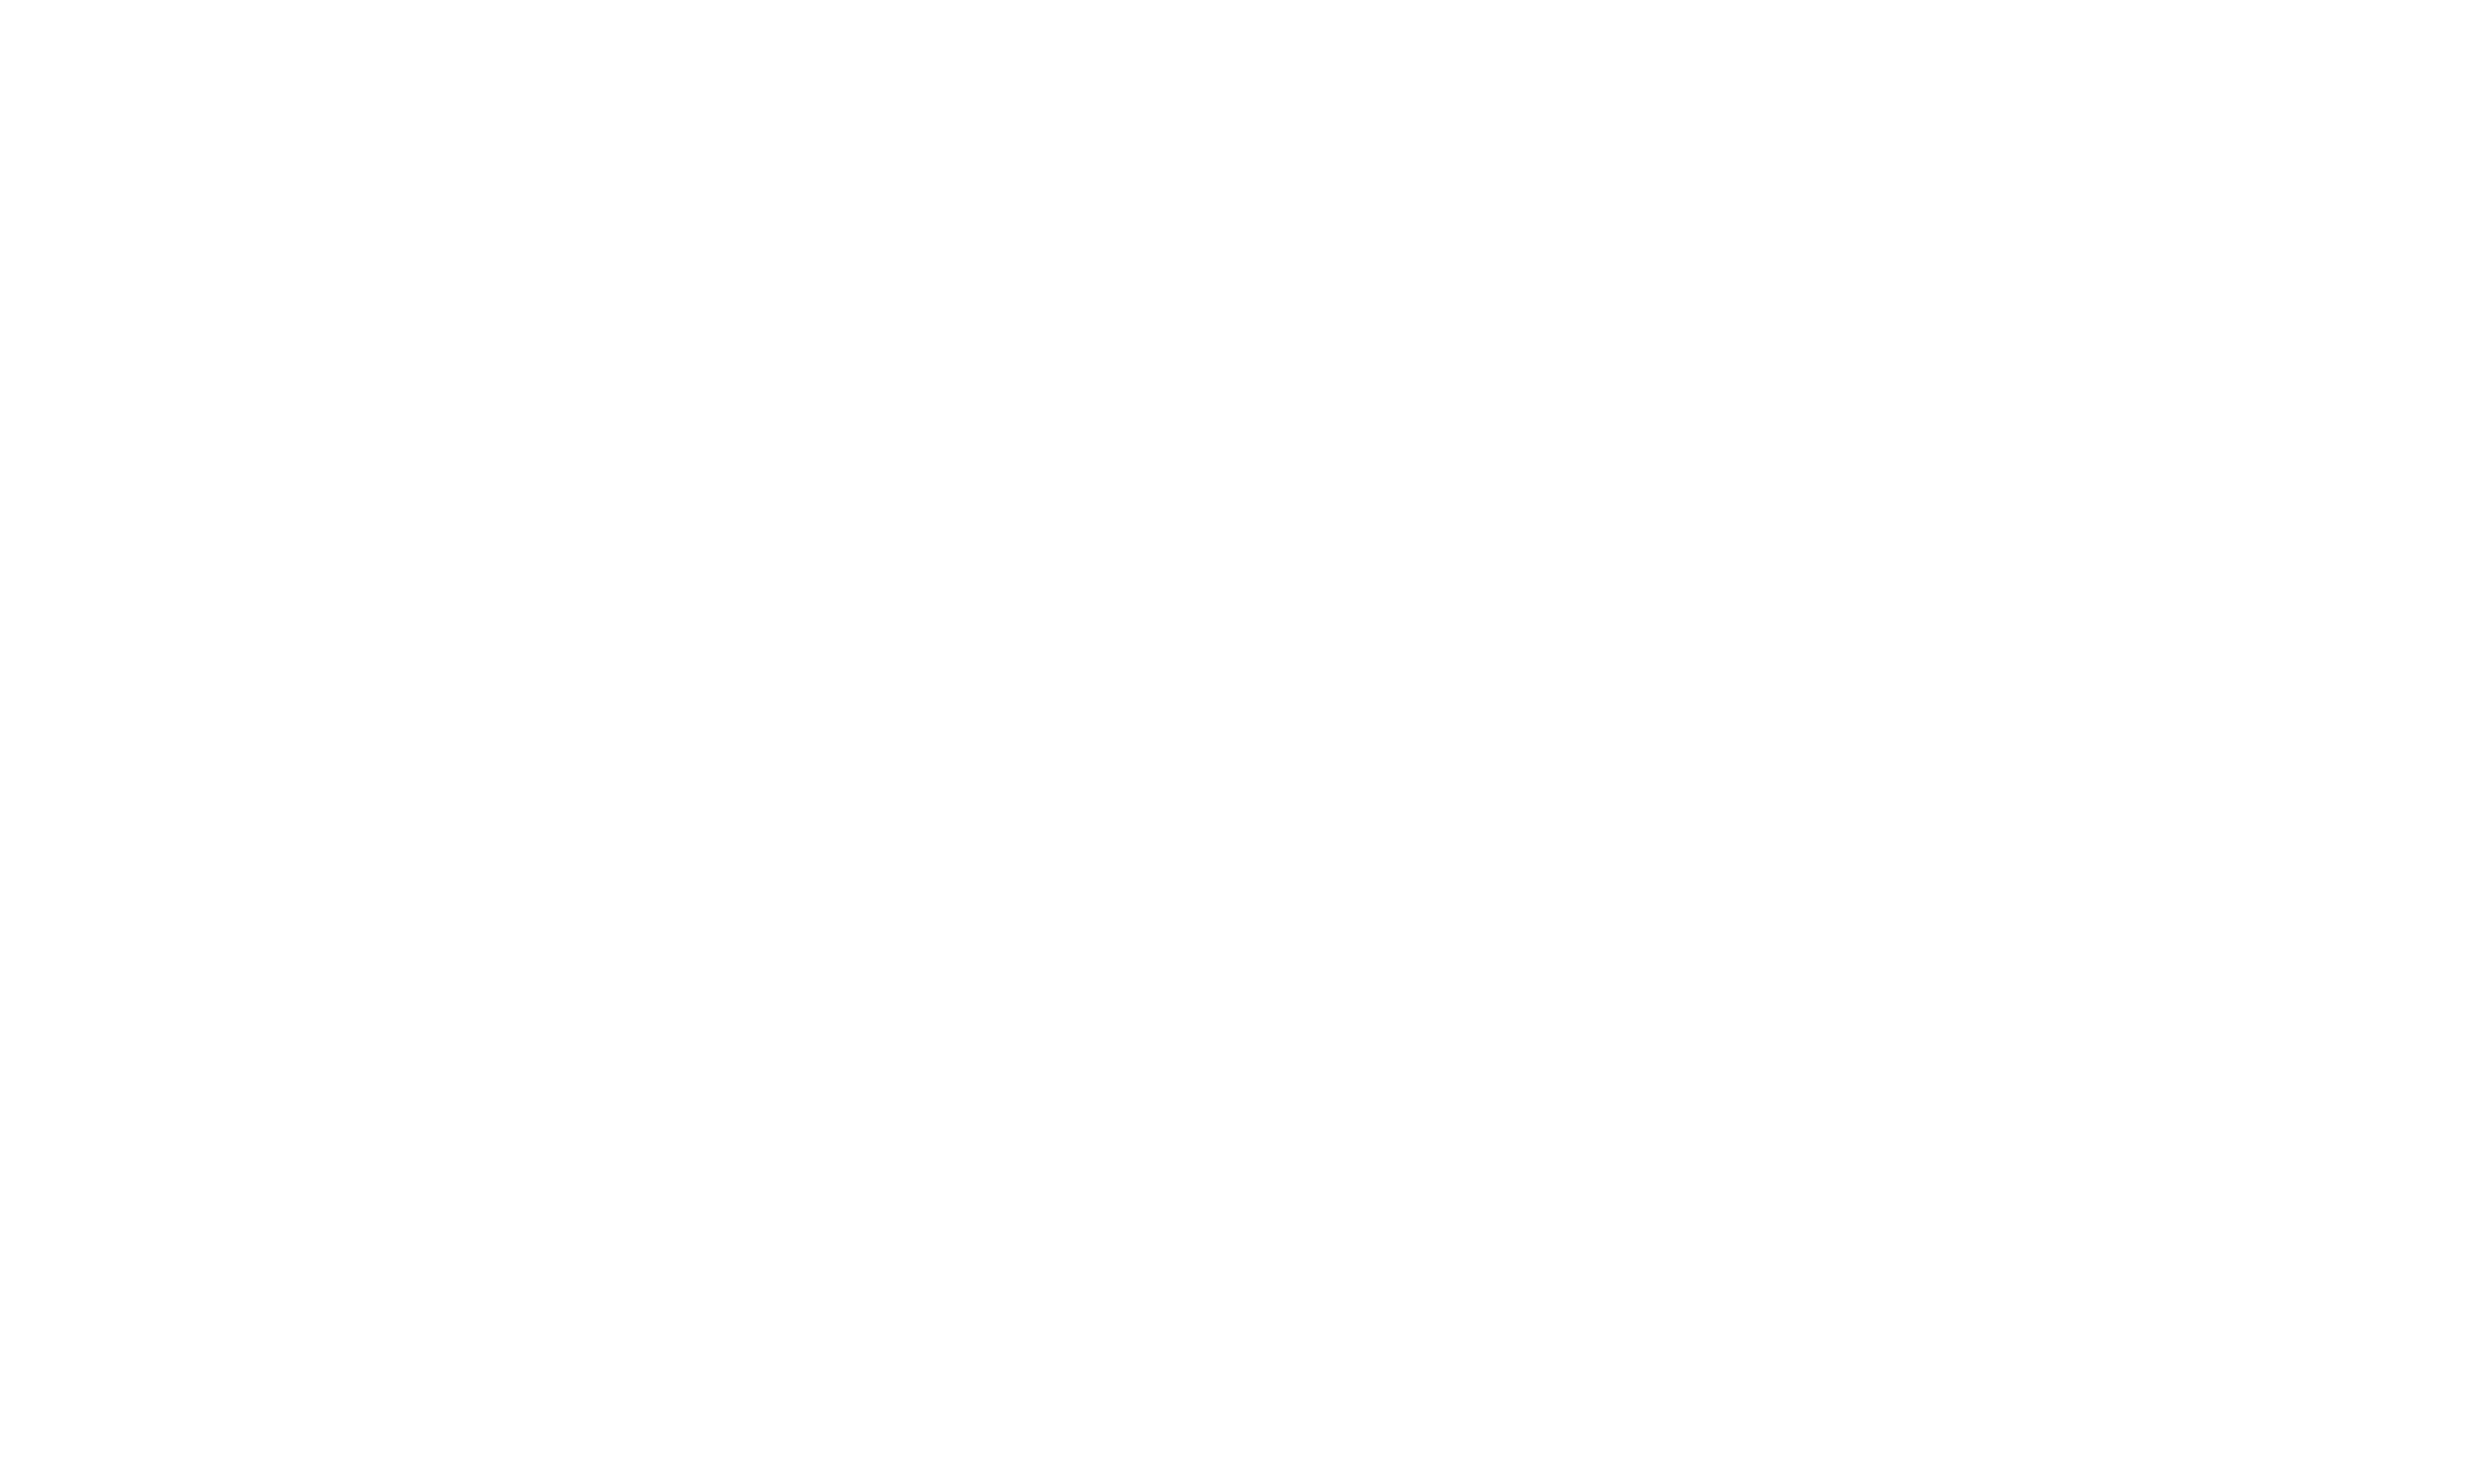 Carly Fanta